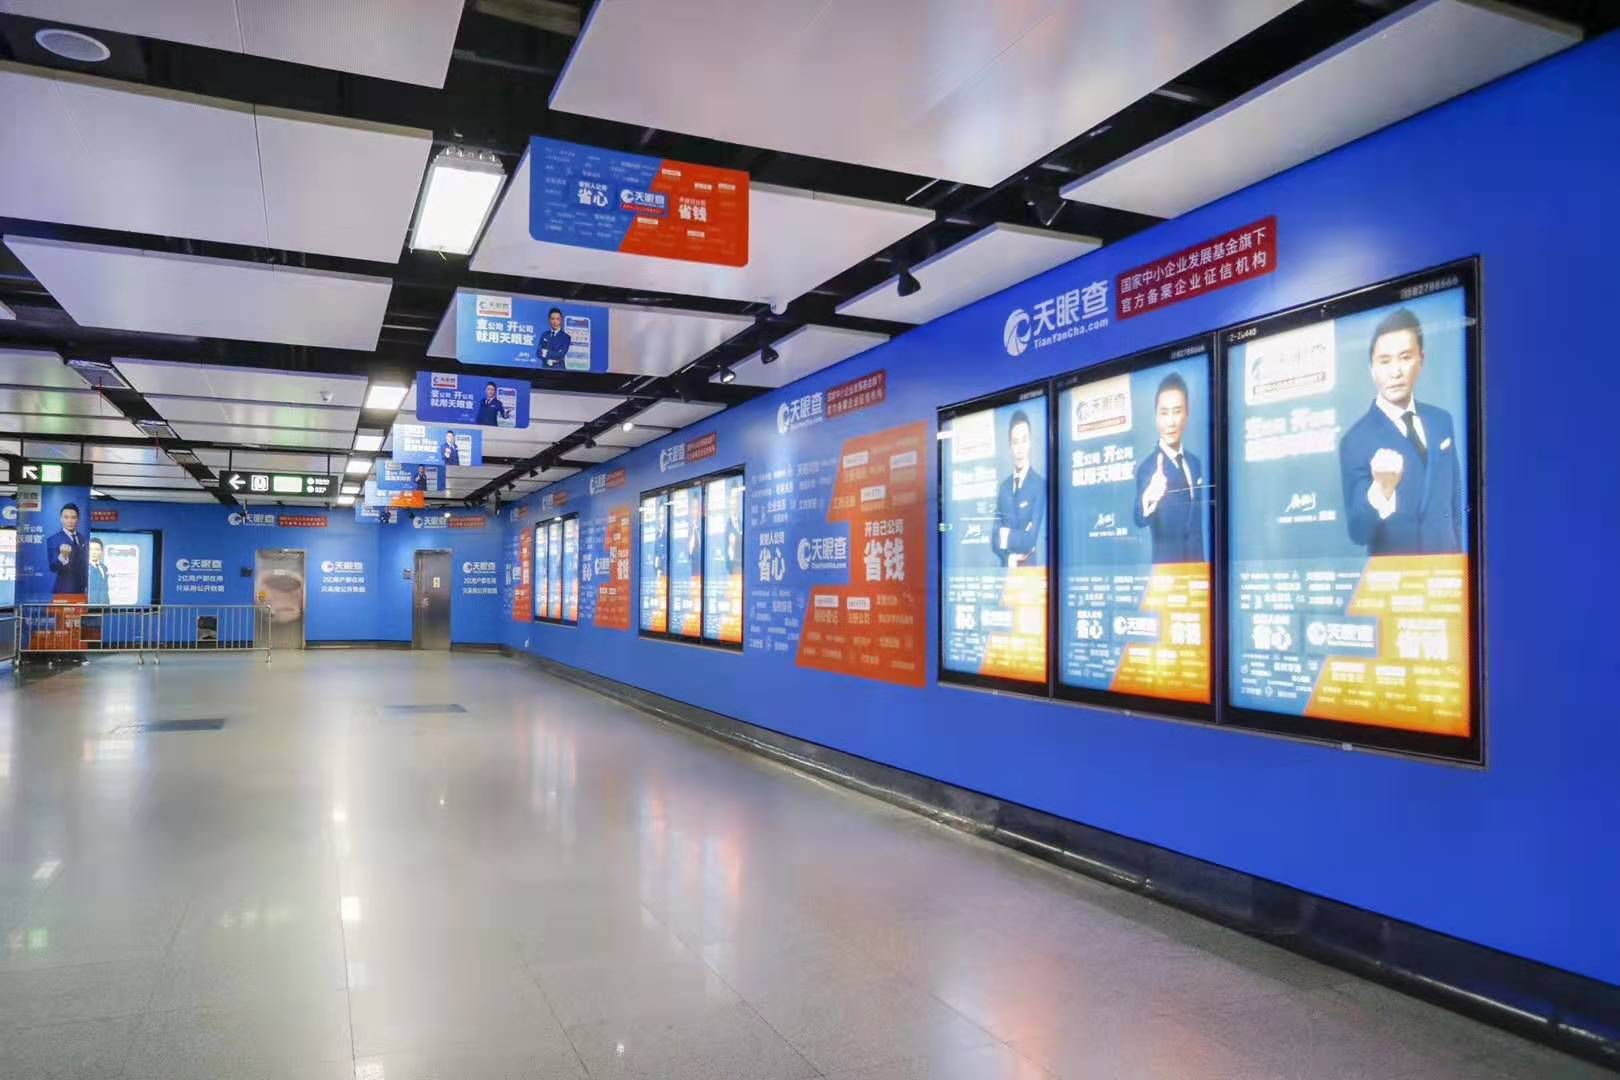 挑选深圳地铁广告平台有什么技巧